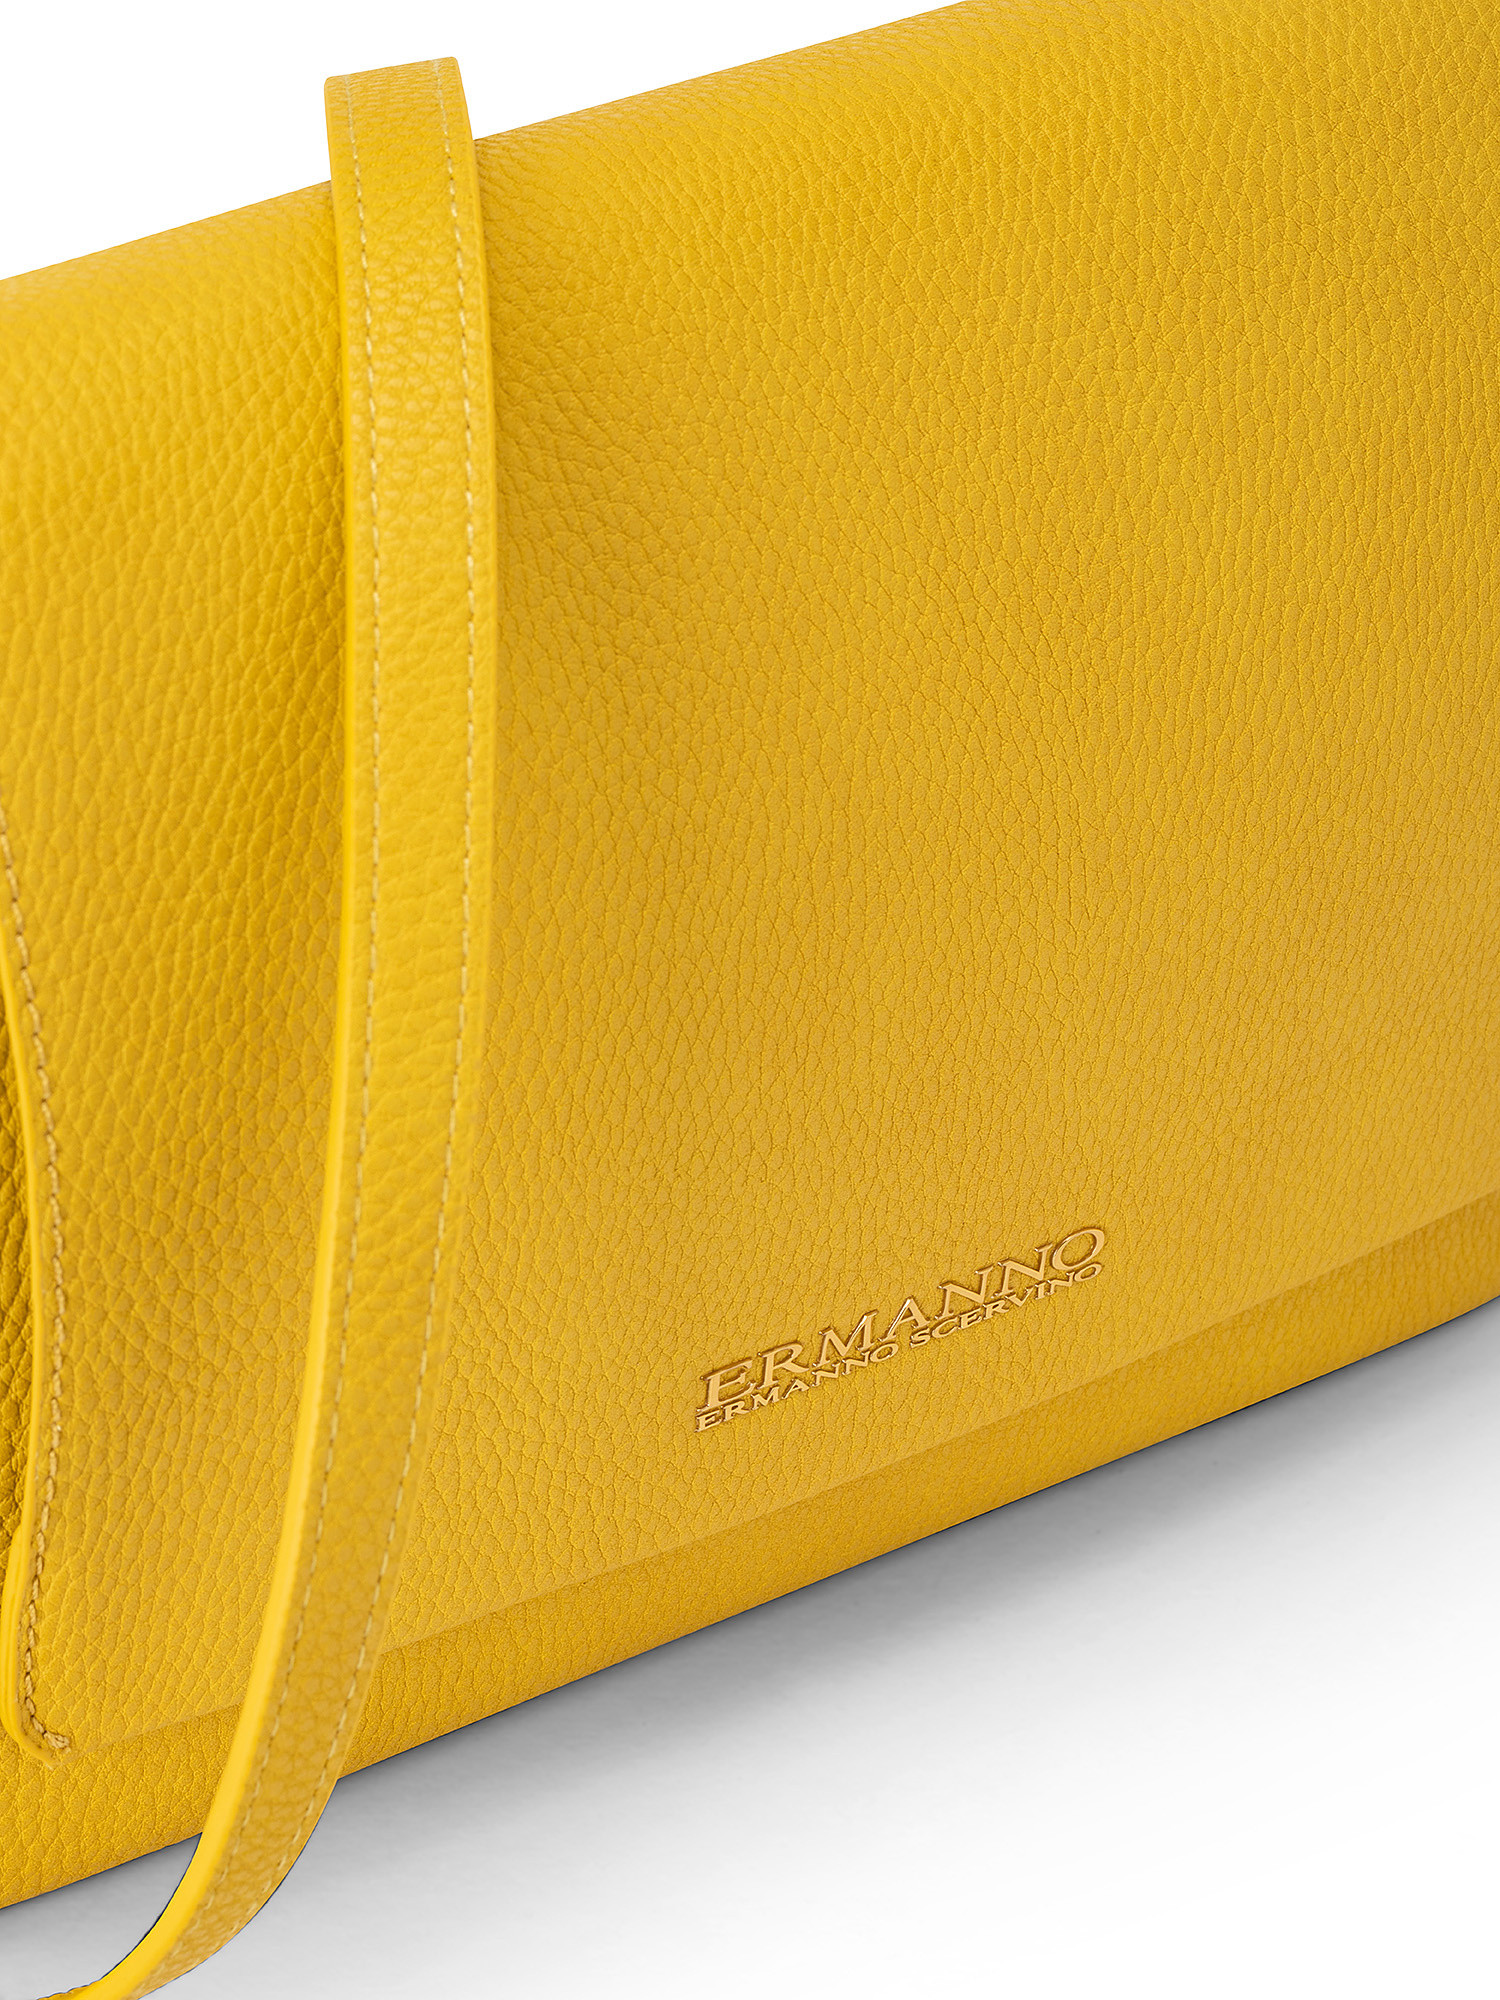 Mirella Flap Bag, Yellow, large image number 2